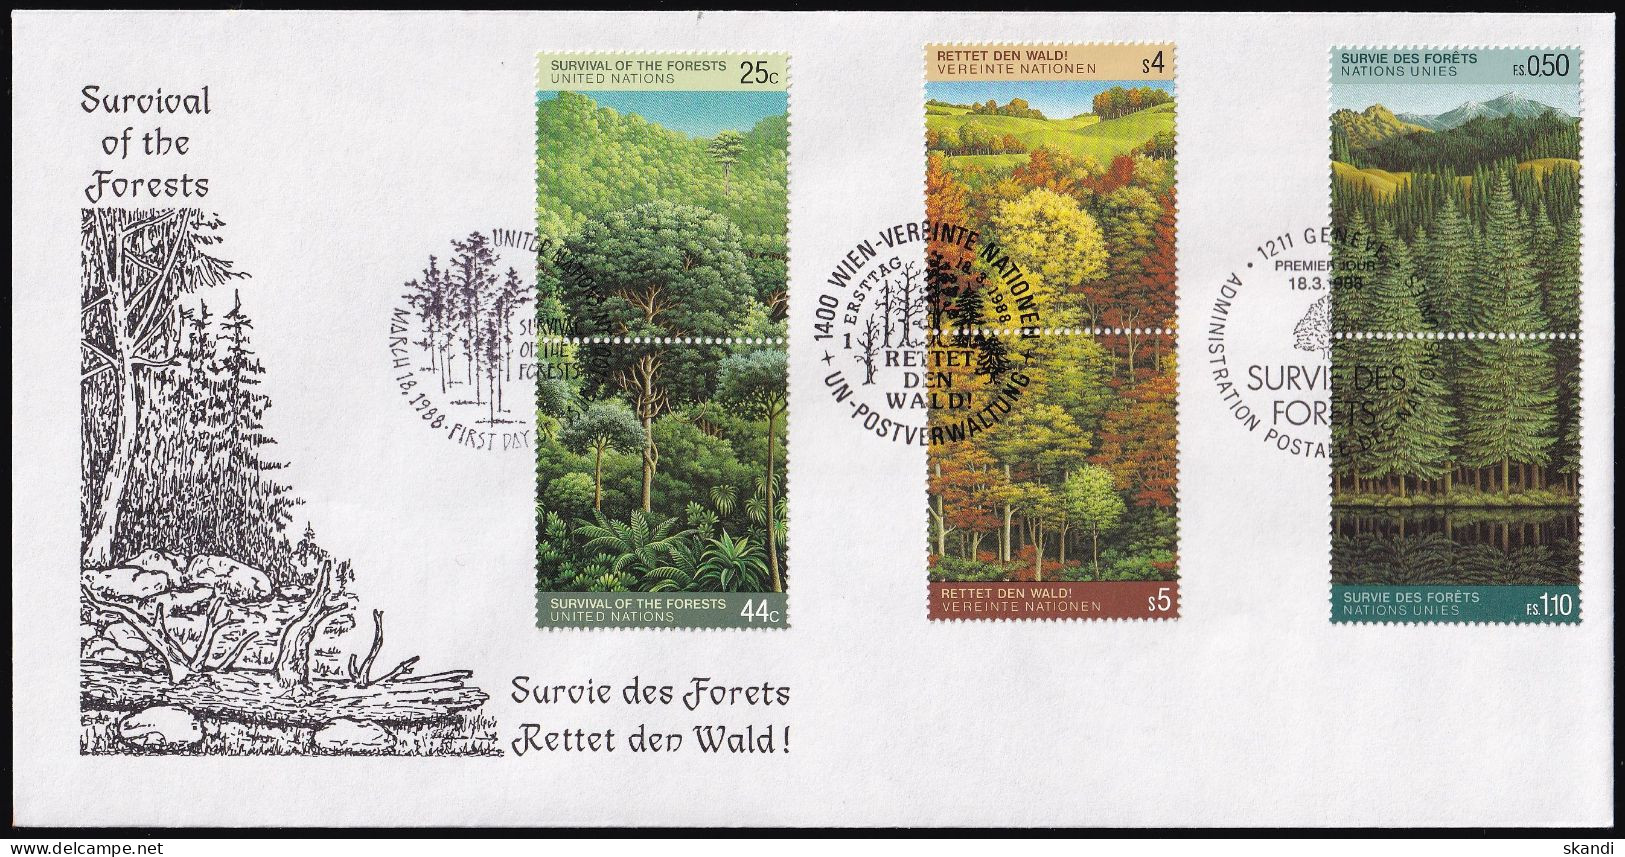 UNO NEW YORK - WIEN - GENF 1988 TRIO-FDC Rettet Den Wald - Gemeinschaftsausgaben New York/Genf/Wien